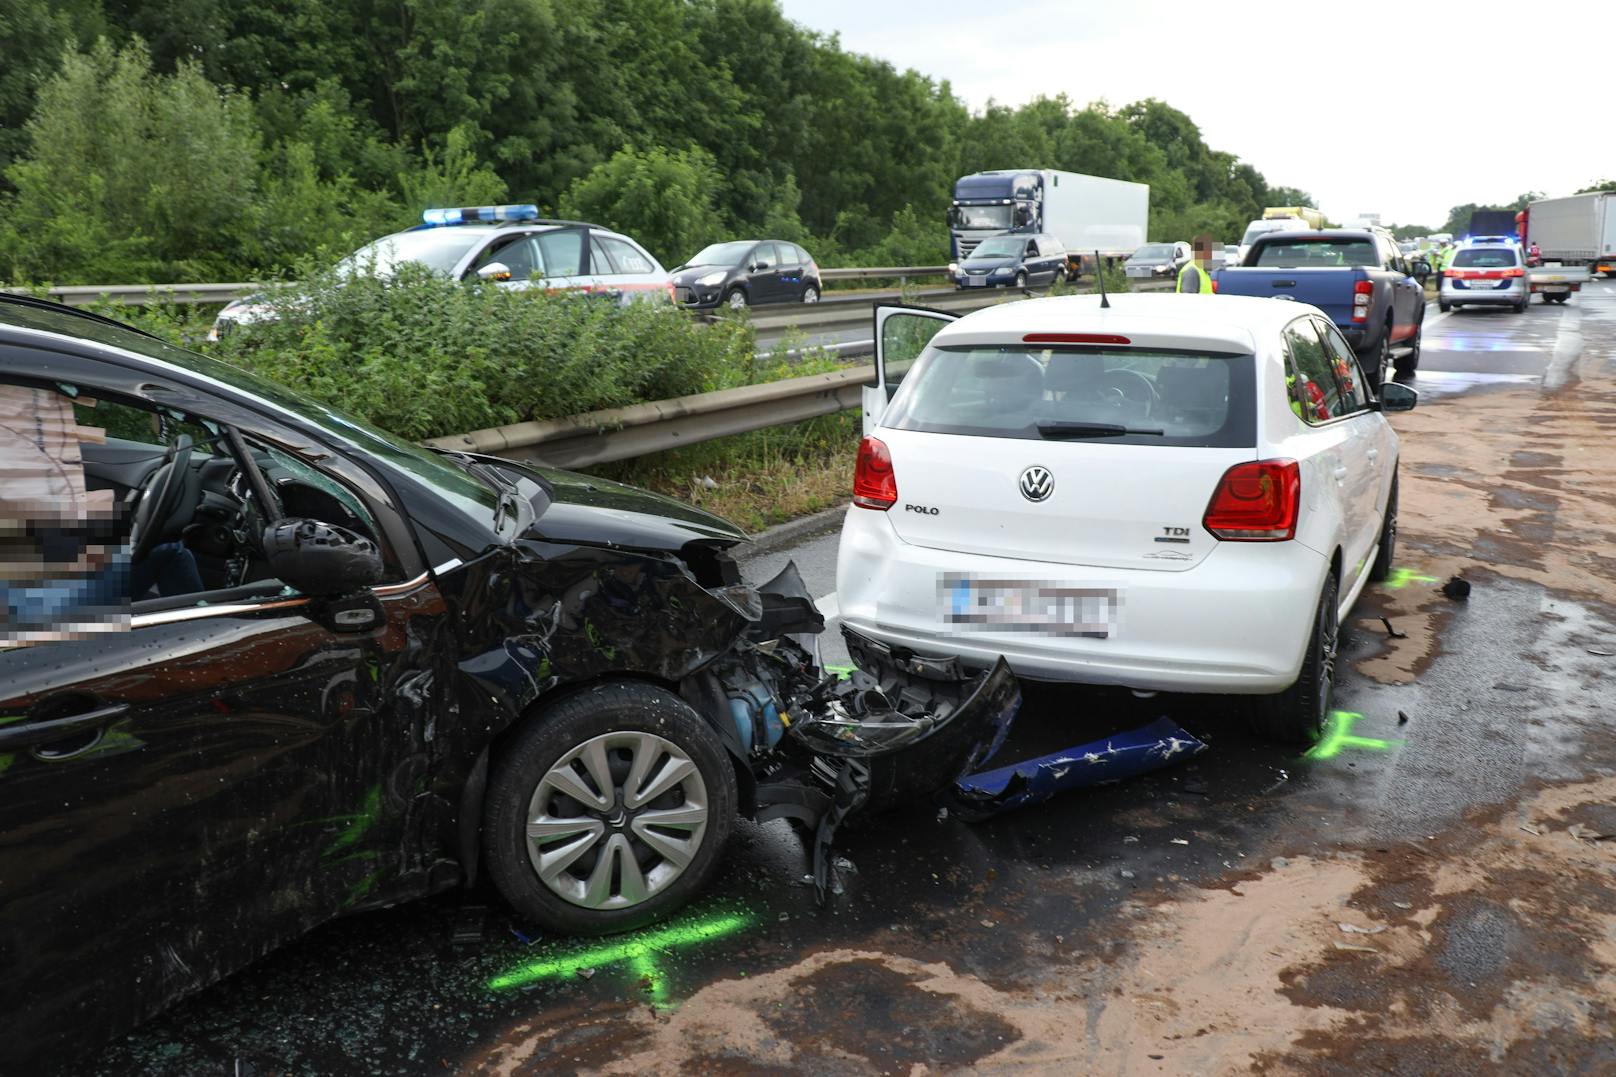 Auf der A25 bei Weißkirchen an der Traun (OÖ) ist ein Serienunfall mit 13 Fahrzeugen passiert.